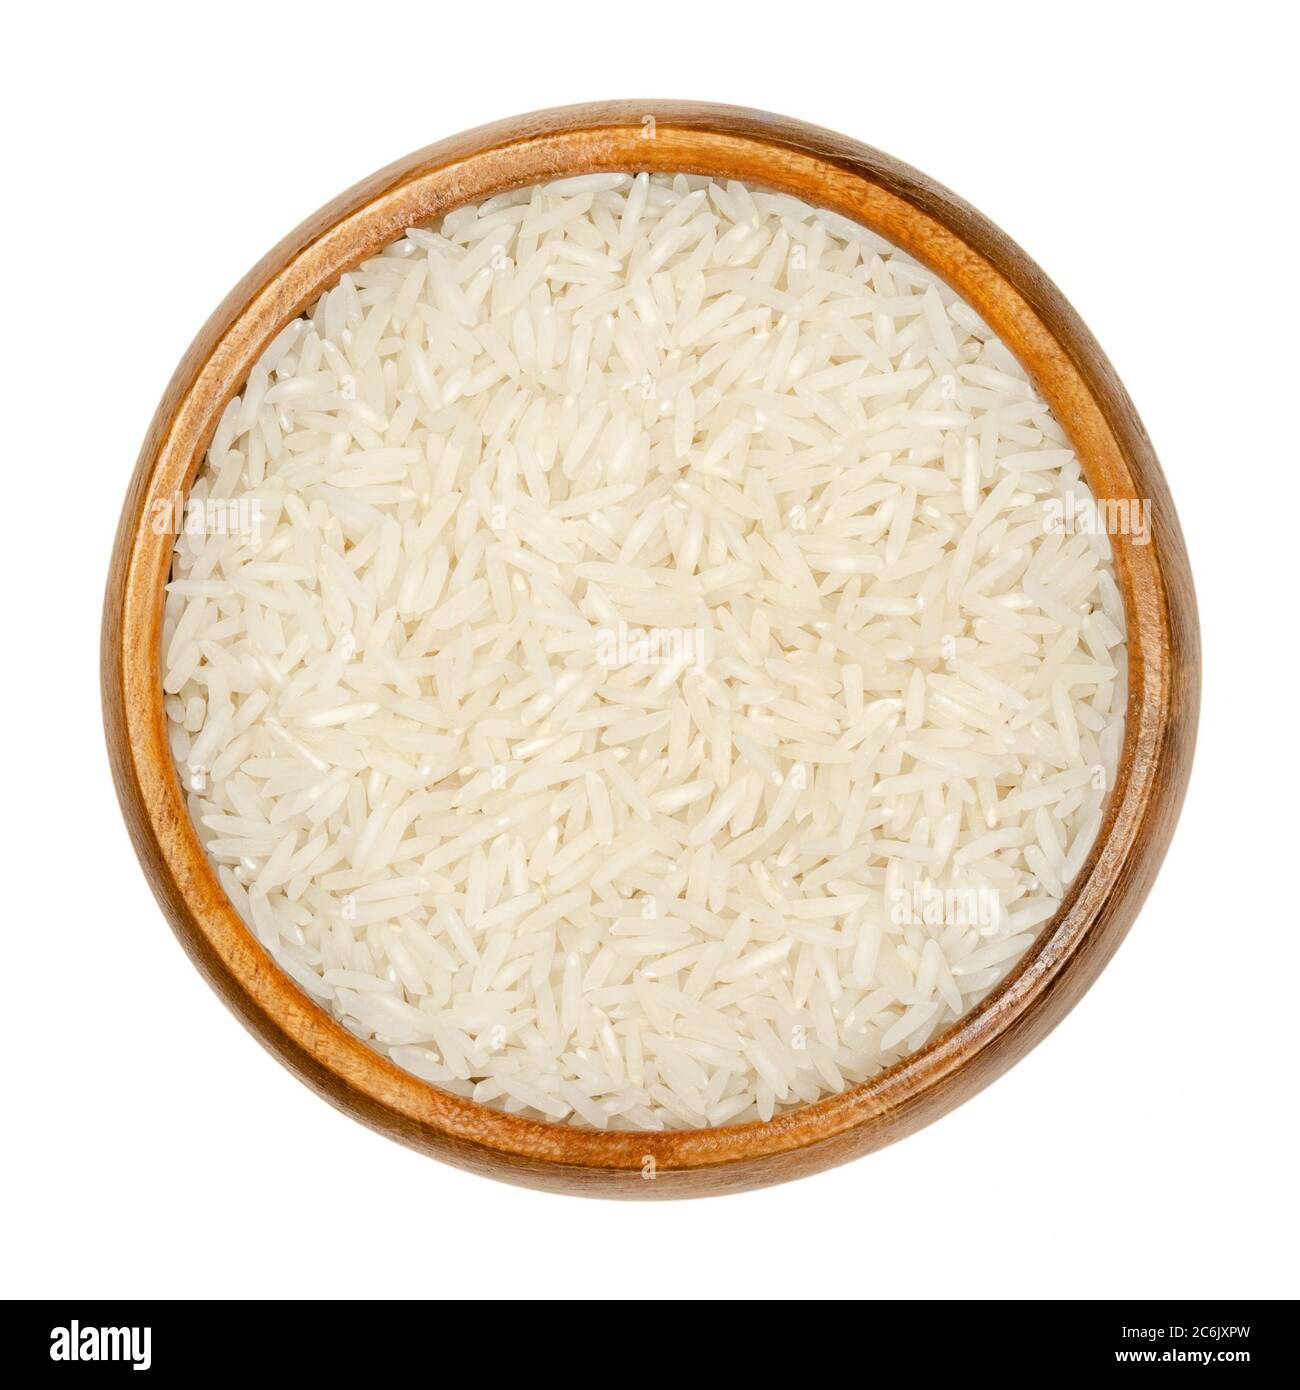 Riso Basmati bianco in ciotola di legno. Varietà di riso con grani lunghi e sottili e odore e sapore aromatico, tradizionalmente dal subcontinente indiano. Foto Stock